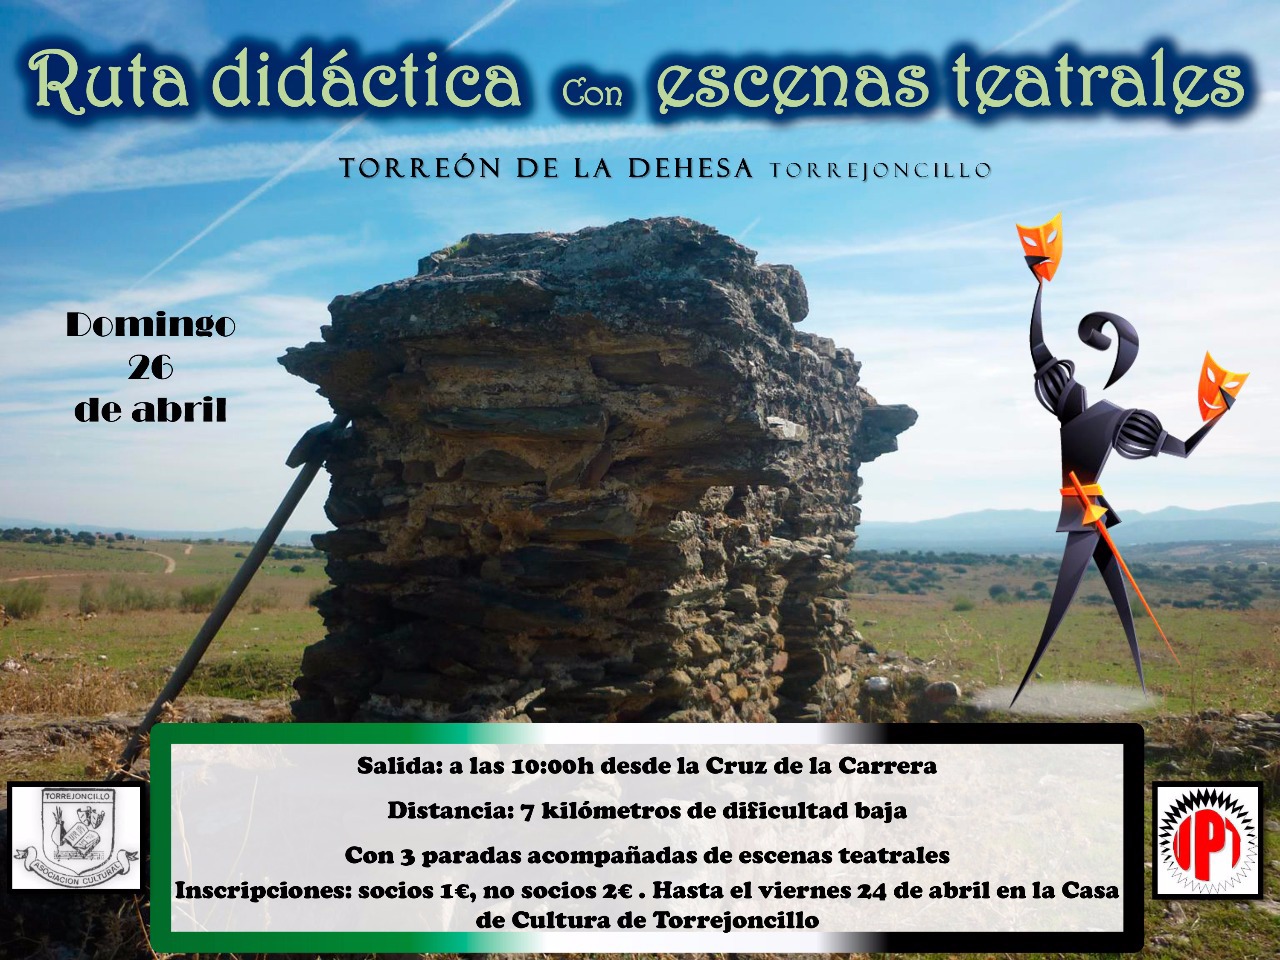 Ruta didáctica con escenas teatrales en Torrejoncillo